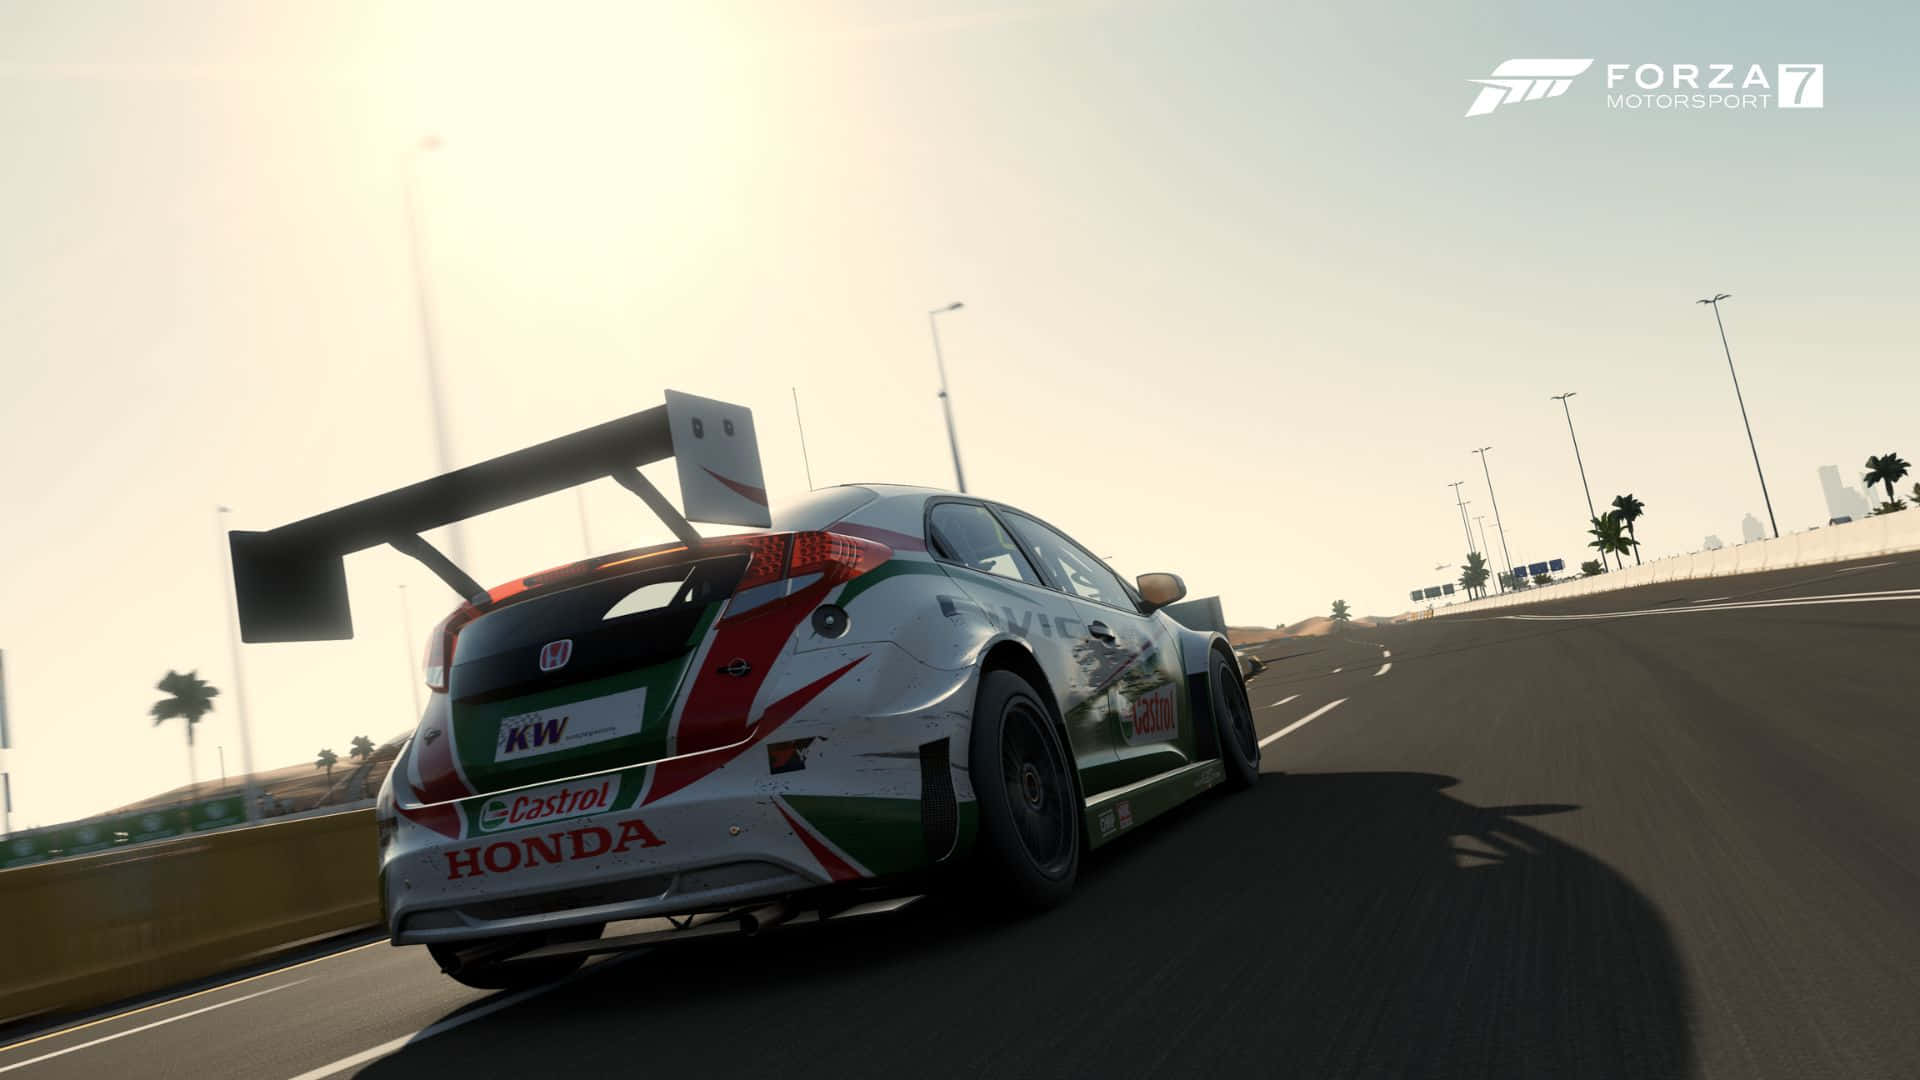 Hdbakgrundsbild För Forza Motorsport 7 Och Honda Civic.